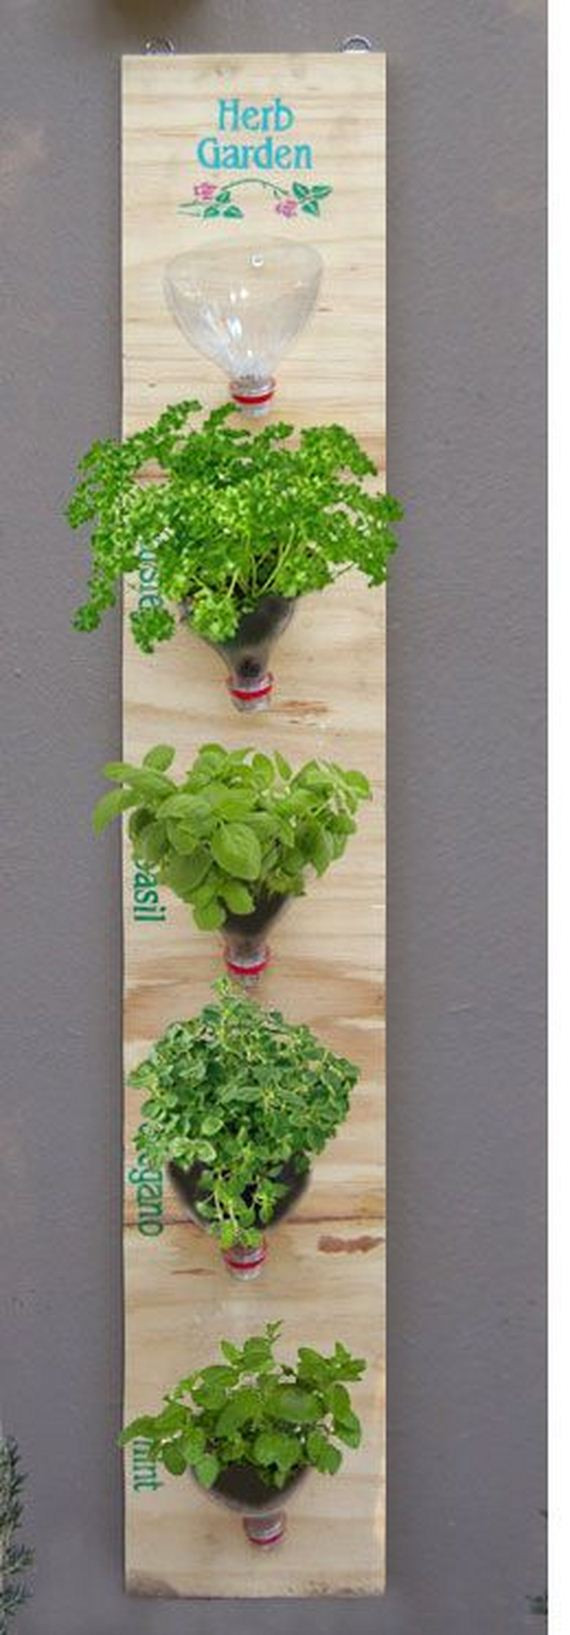 Best ideas about DIY Hanging Herb Garden
. Save or Pin DIY Indoor Herb Garden Ideas Now.